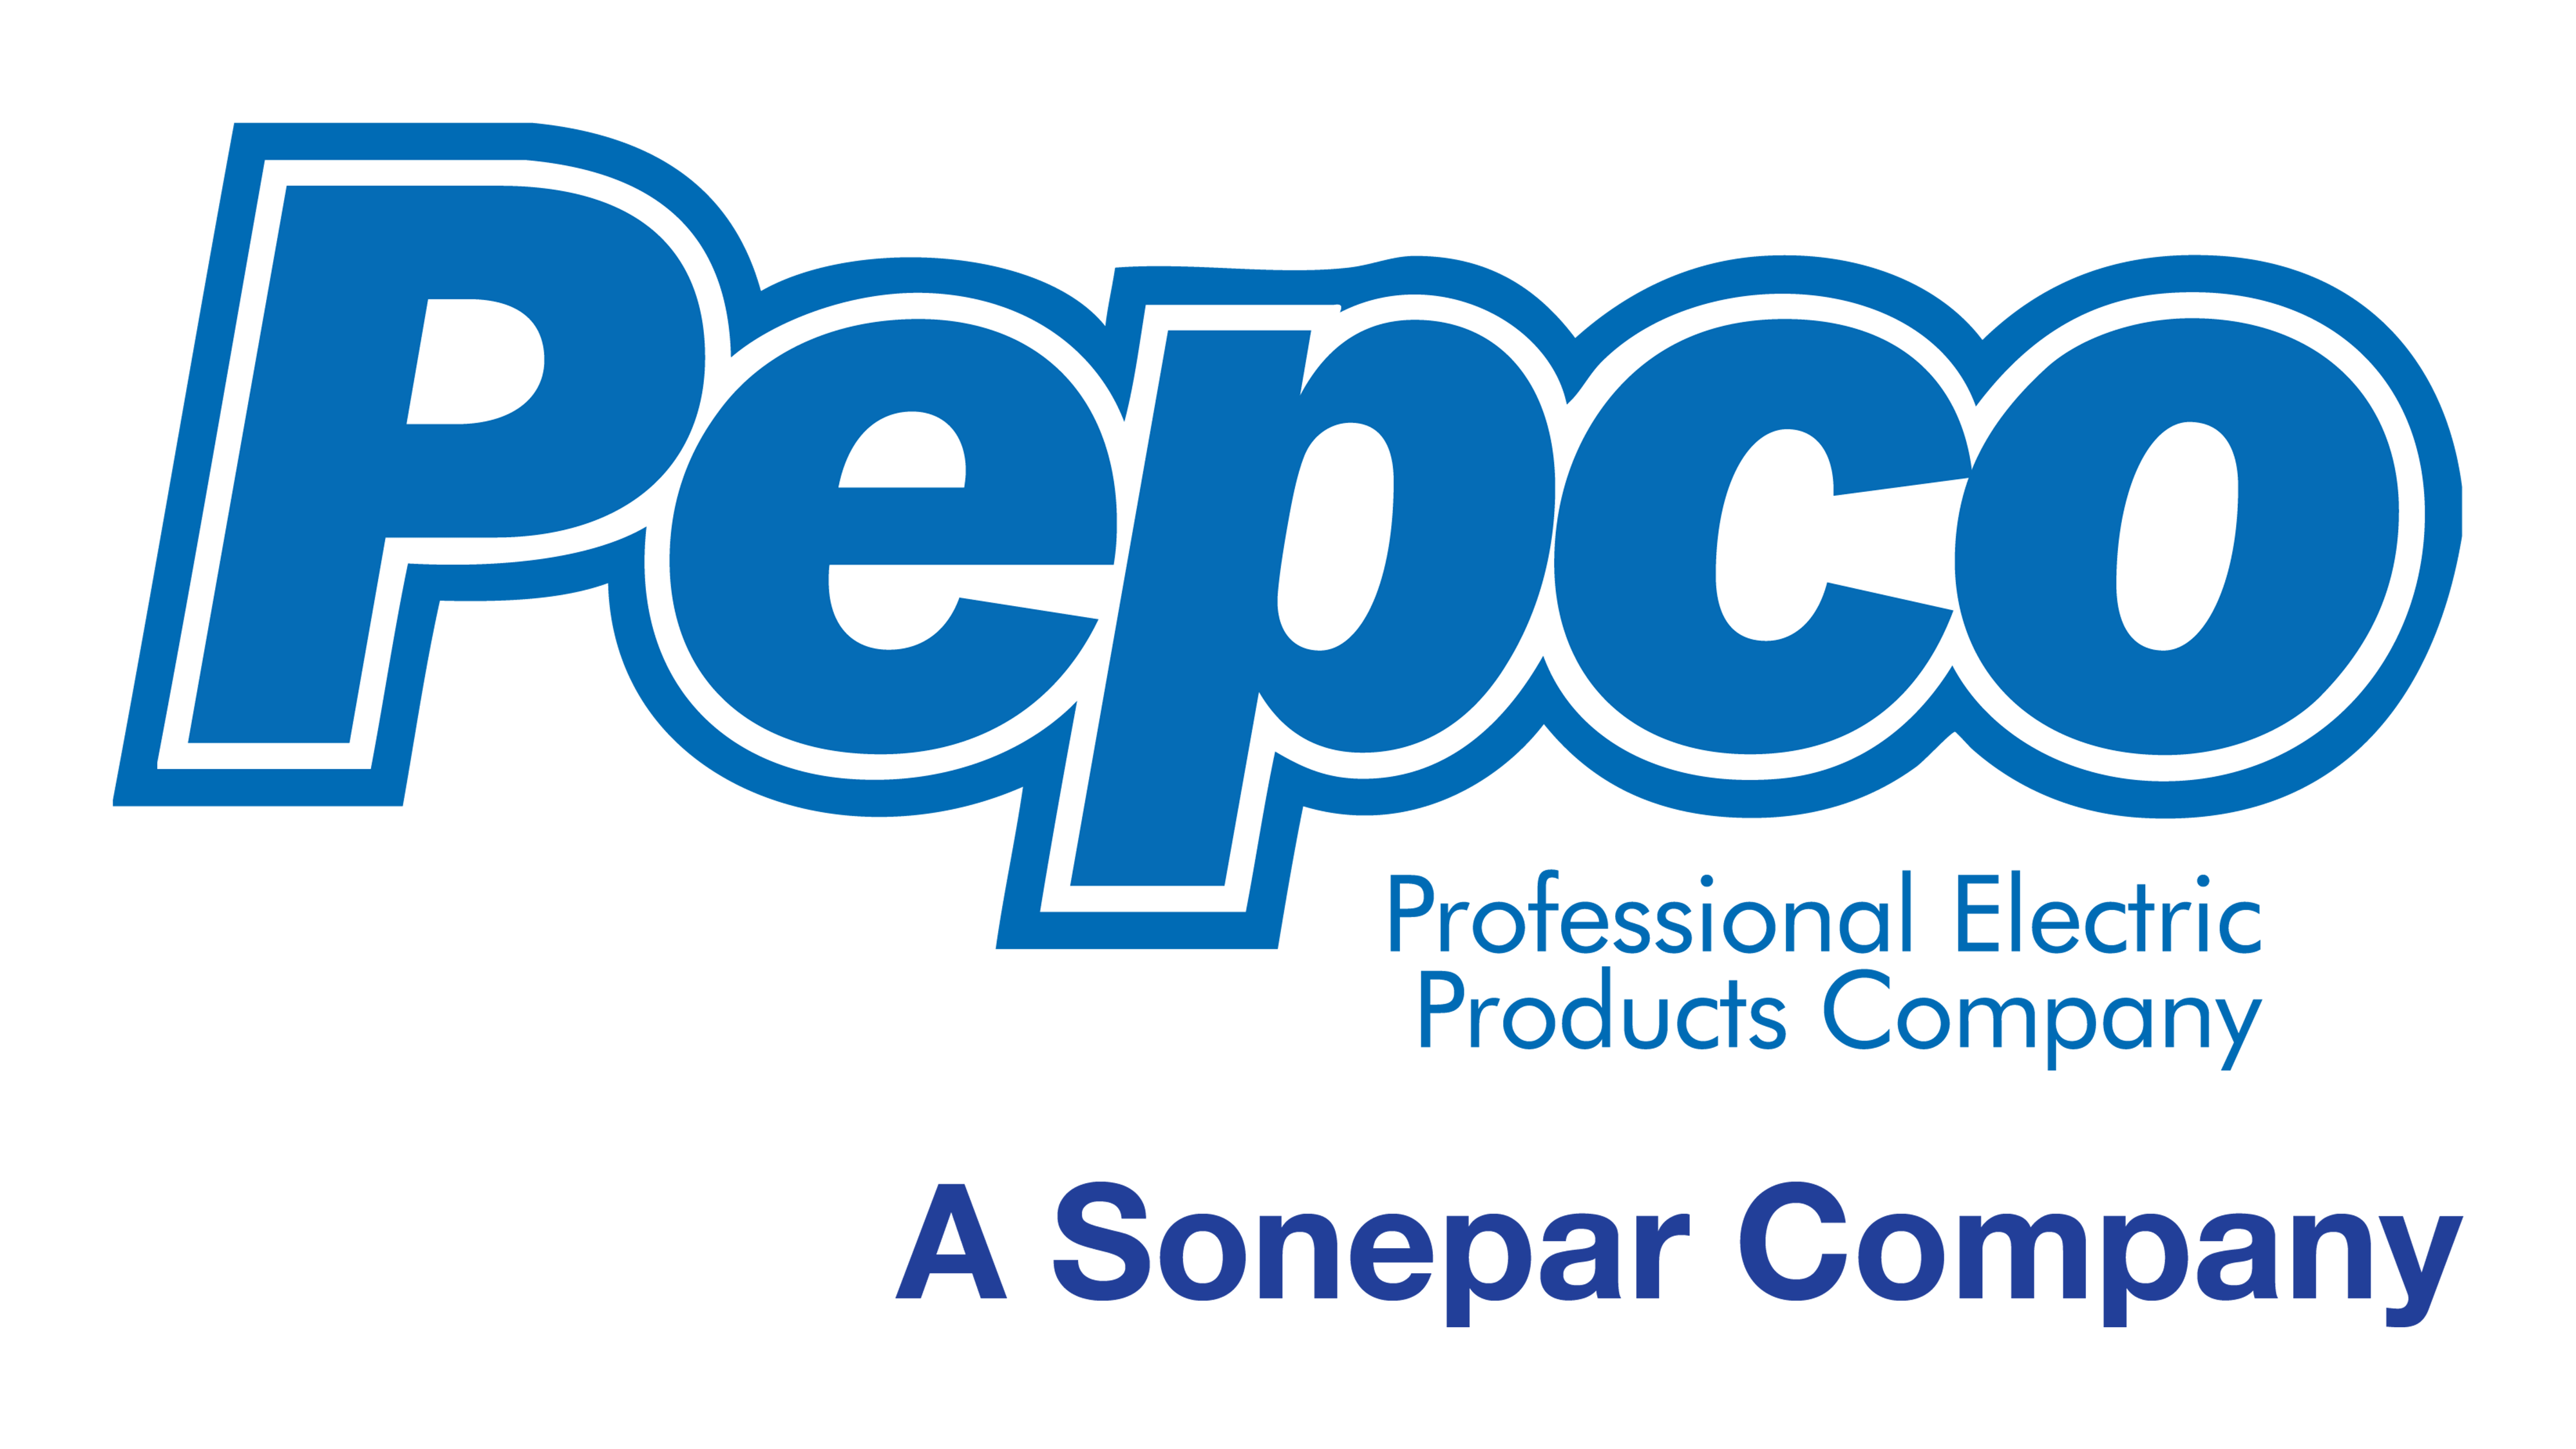 PEPCO_logo